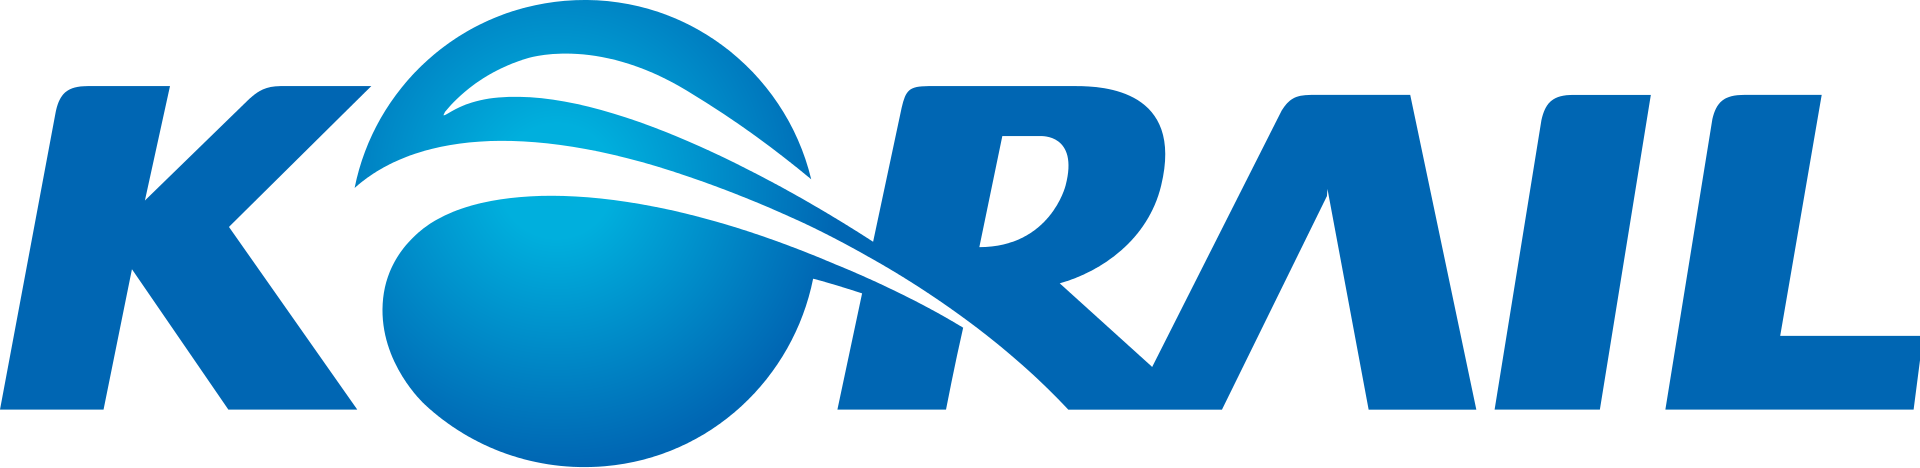 韓国鉄道公社ロゴ